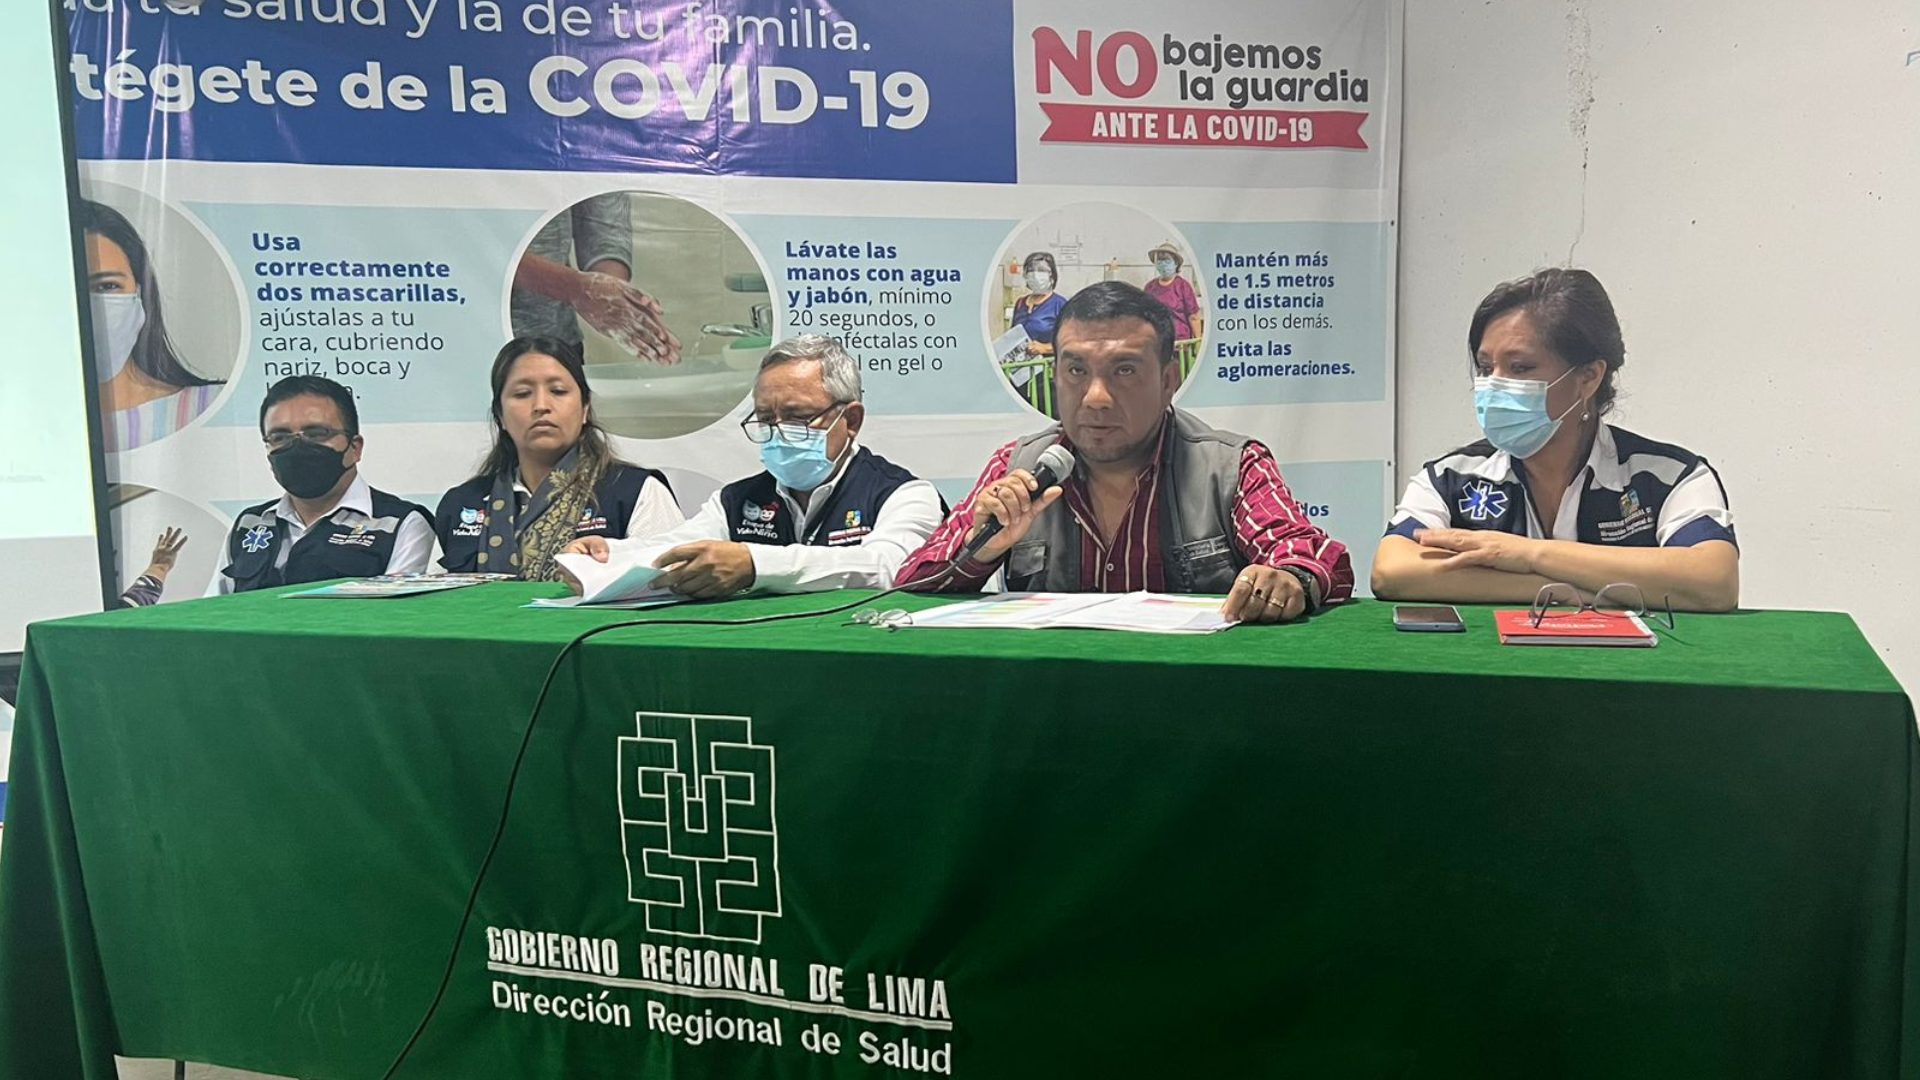 Diresa Lima a annoncé le début de la cinquième vague de COVID-19